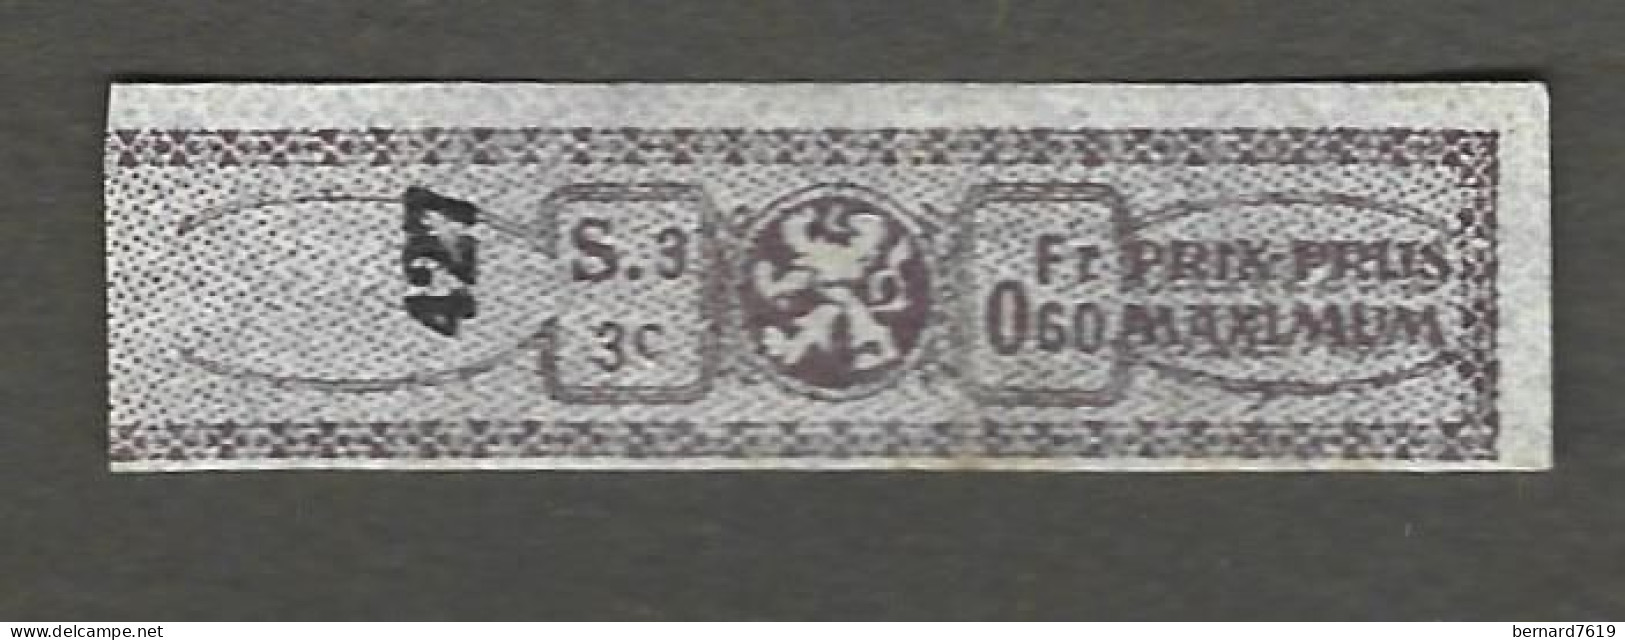 Timbre Taxe  - Tabac -belgique -  - Prix Pruss Maximun - Annee 1870 - 1900 - Marken